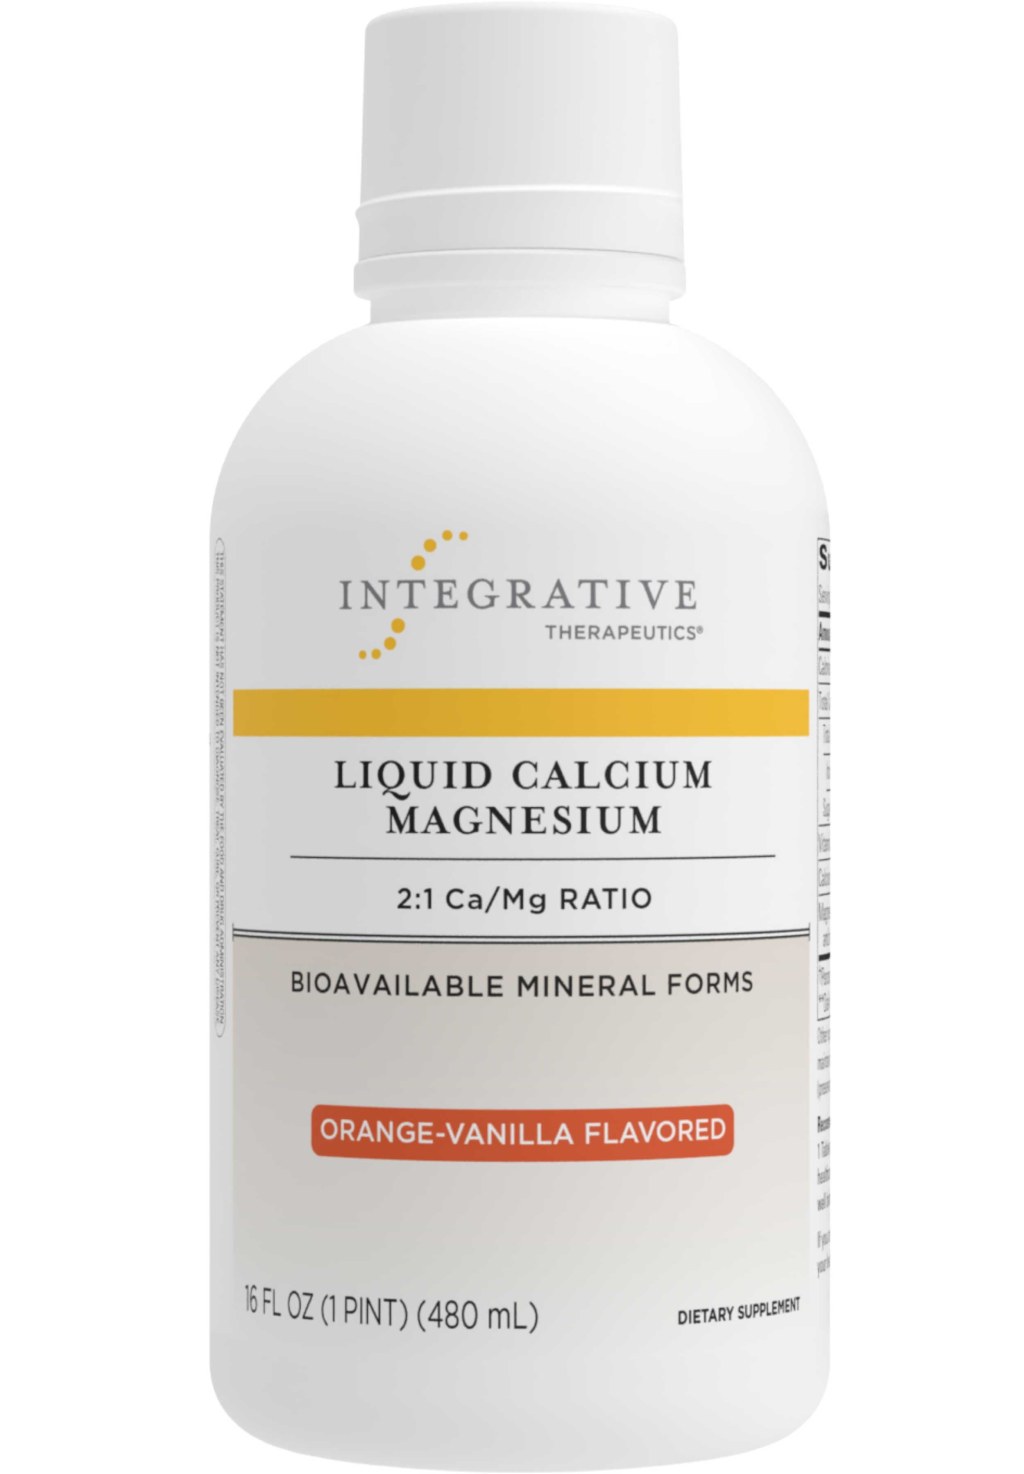 Picture of: Integrative Therapeutics Liquid Calcium Magnesium :